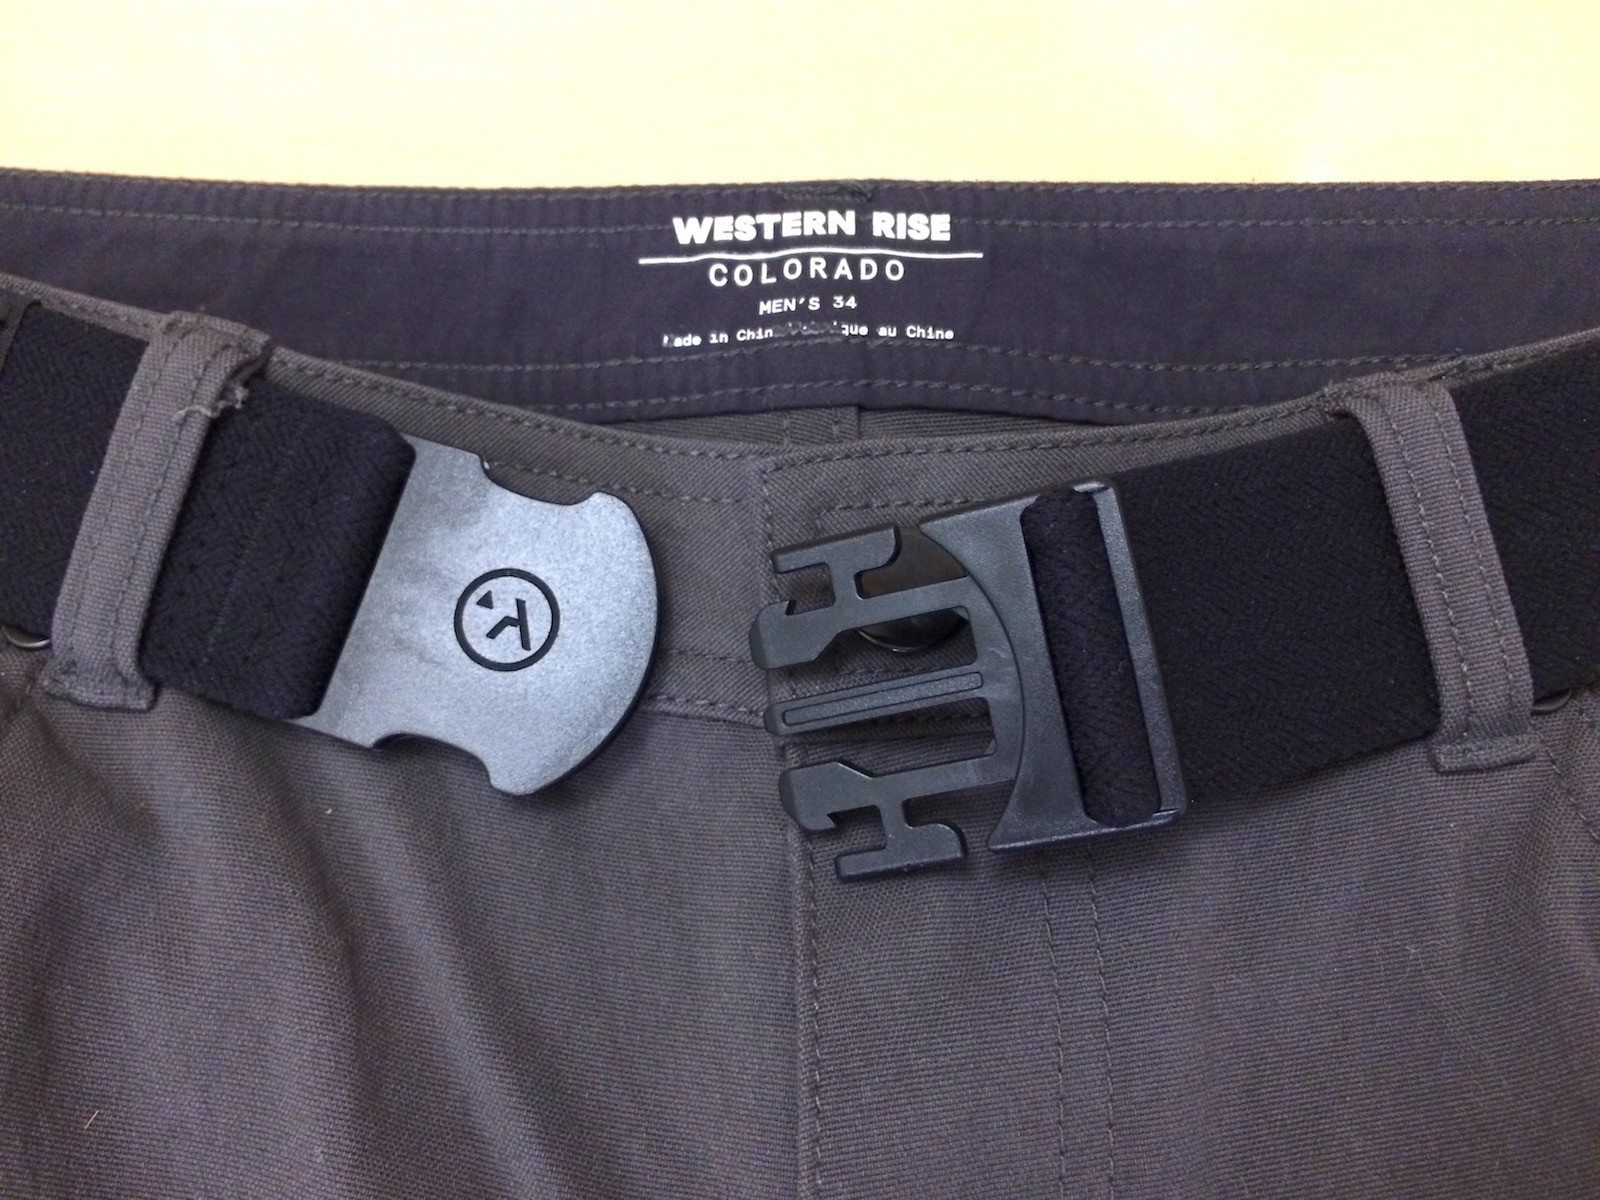 mans all black elastic trouser  belts with unique  quick release black buckle